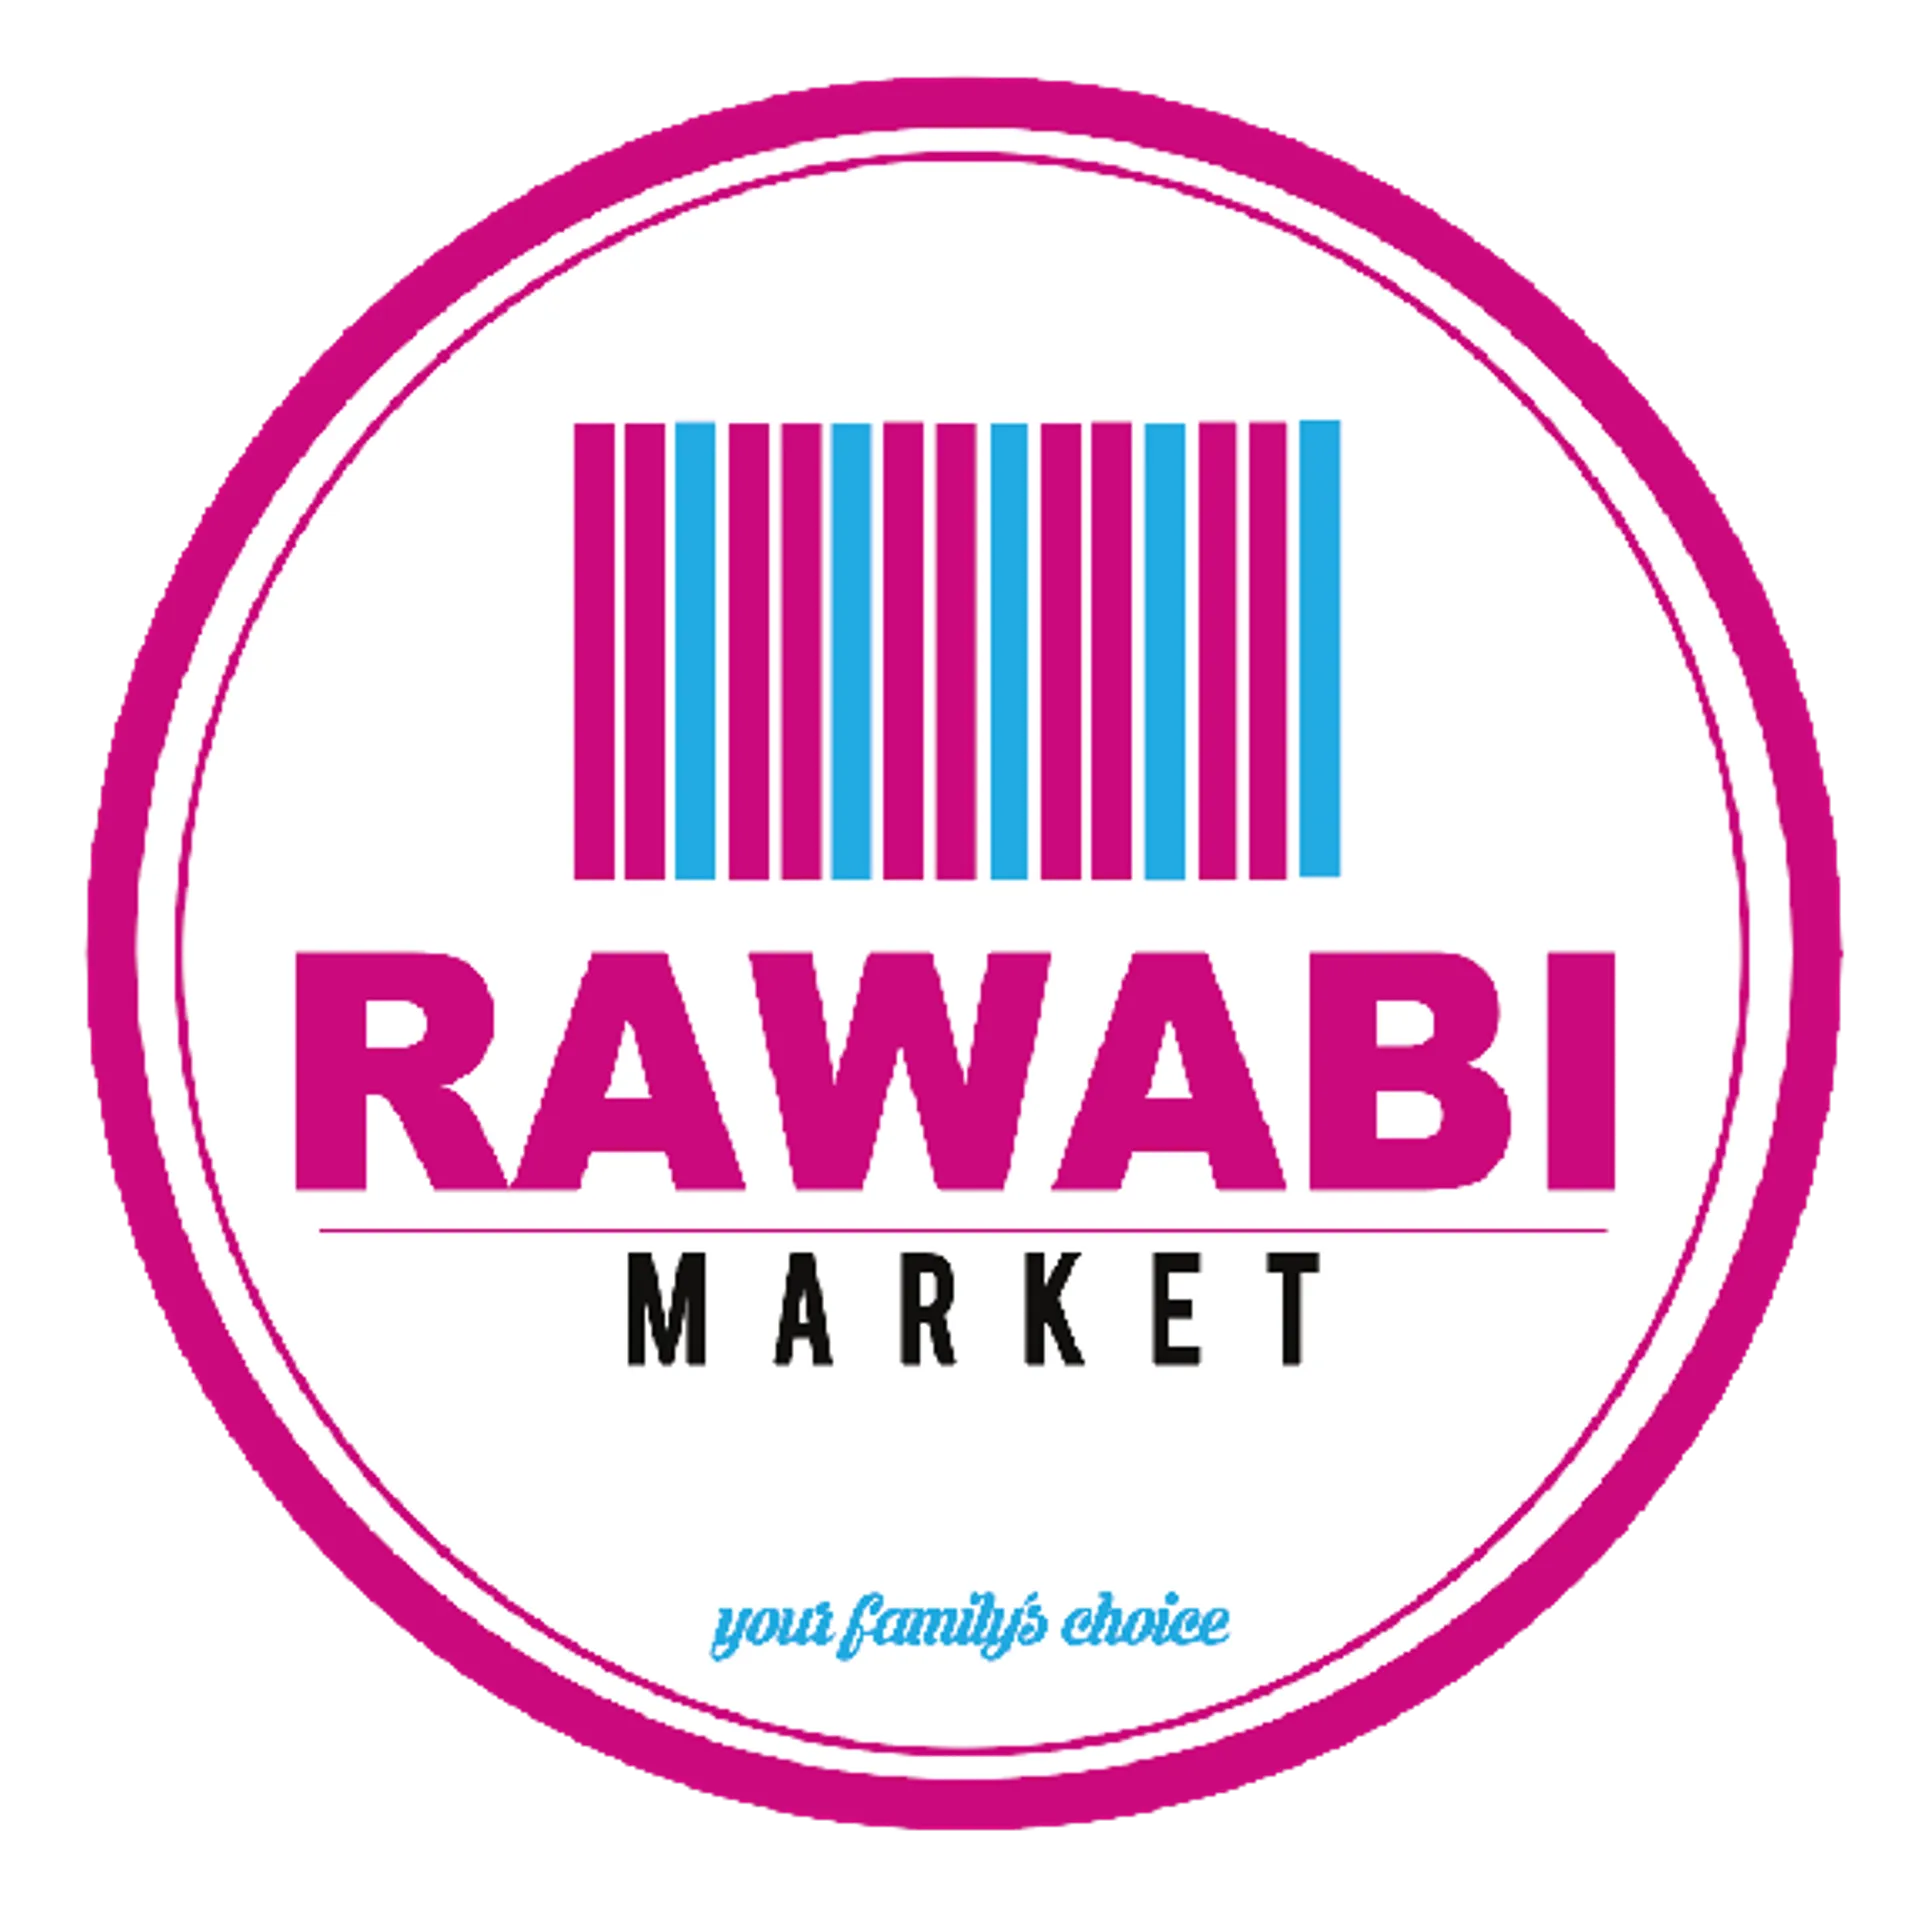 RAWABI MARKET logo. Current weekly ad